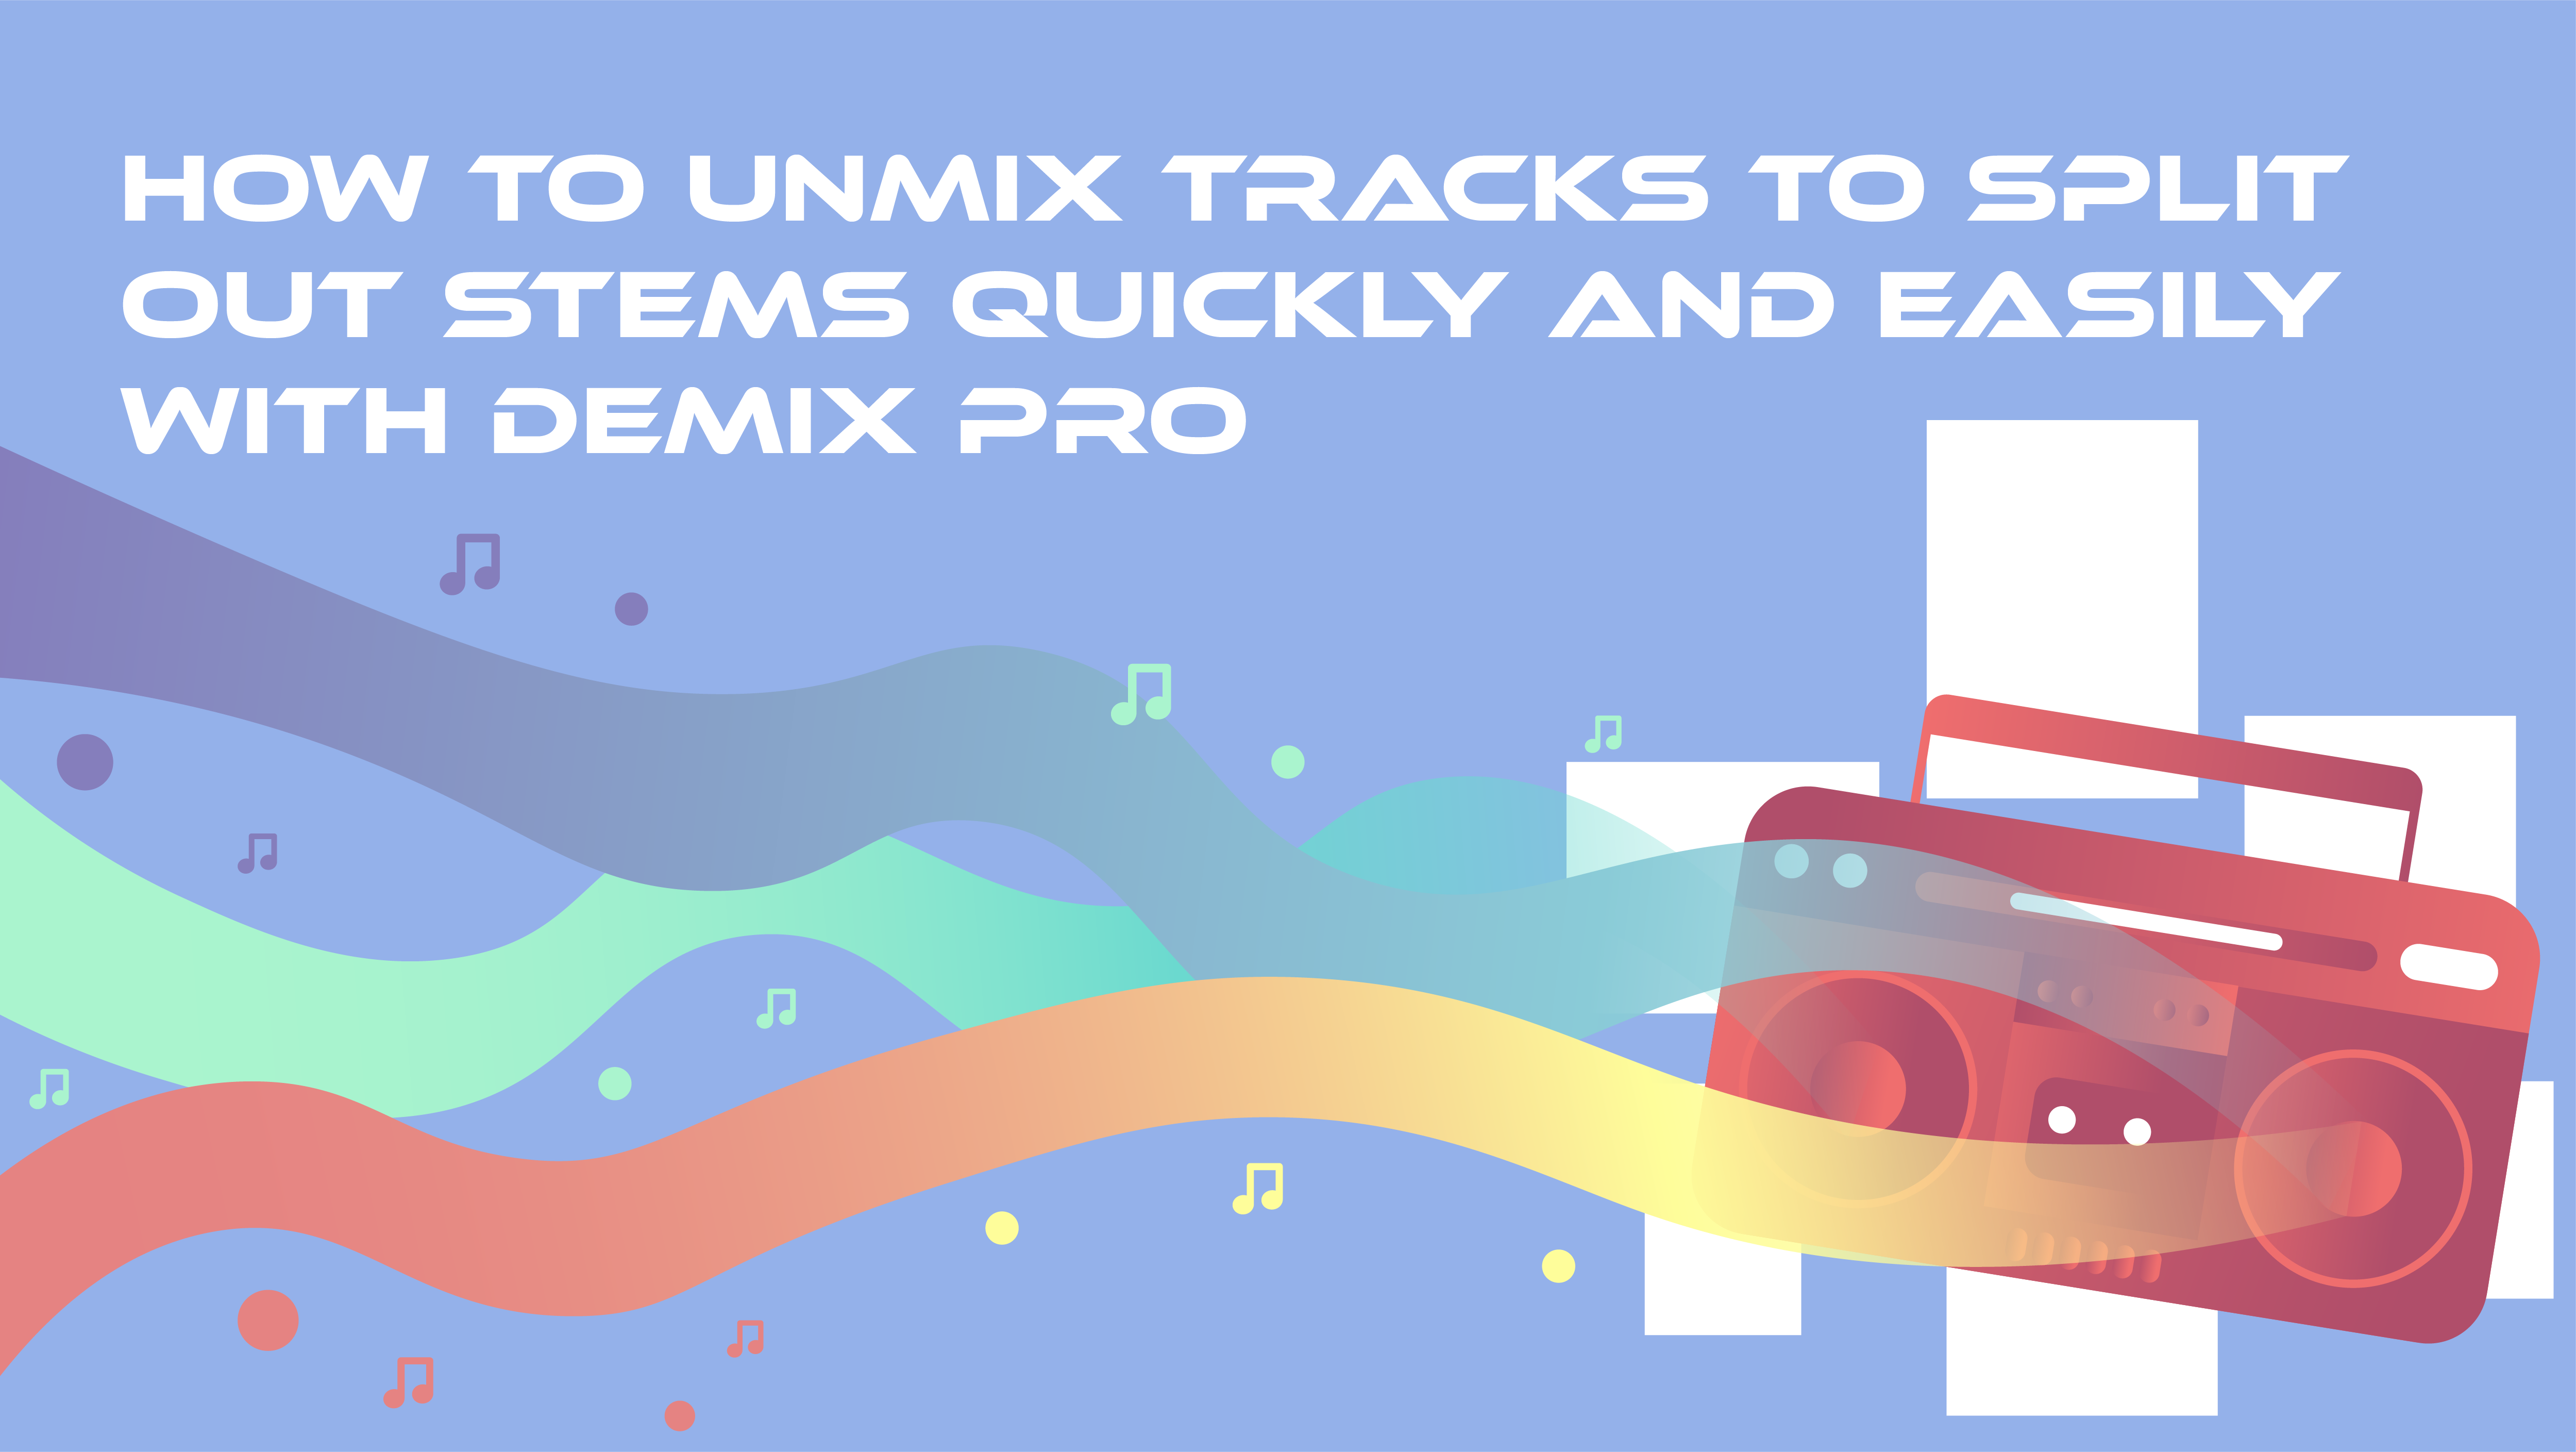 创新中心 DeMix Pro's Software Un-Mixes Tracks for Remastering